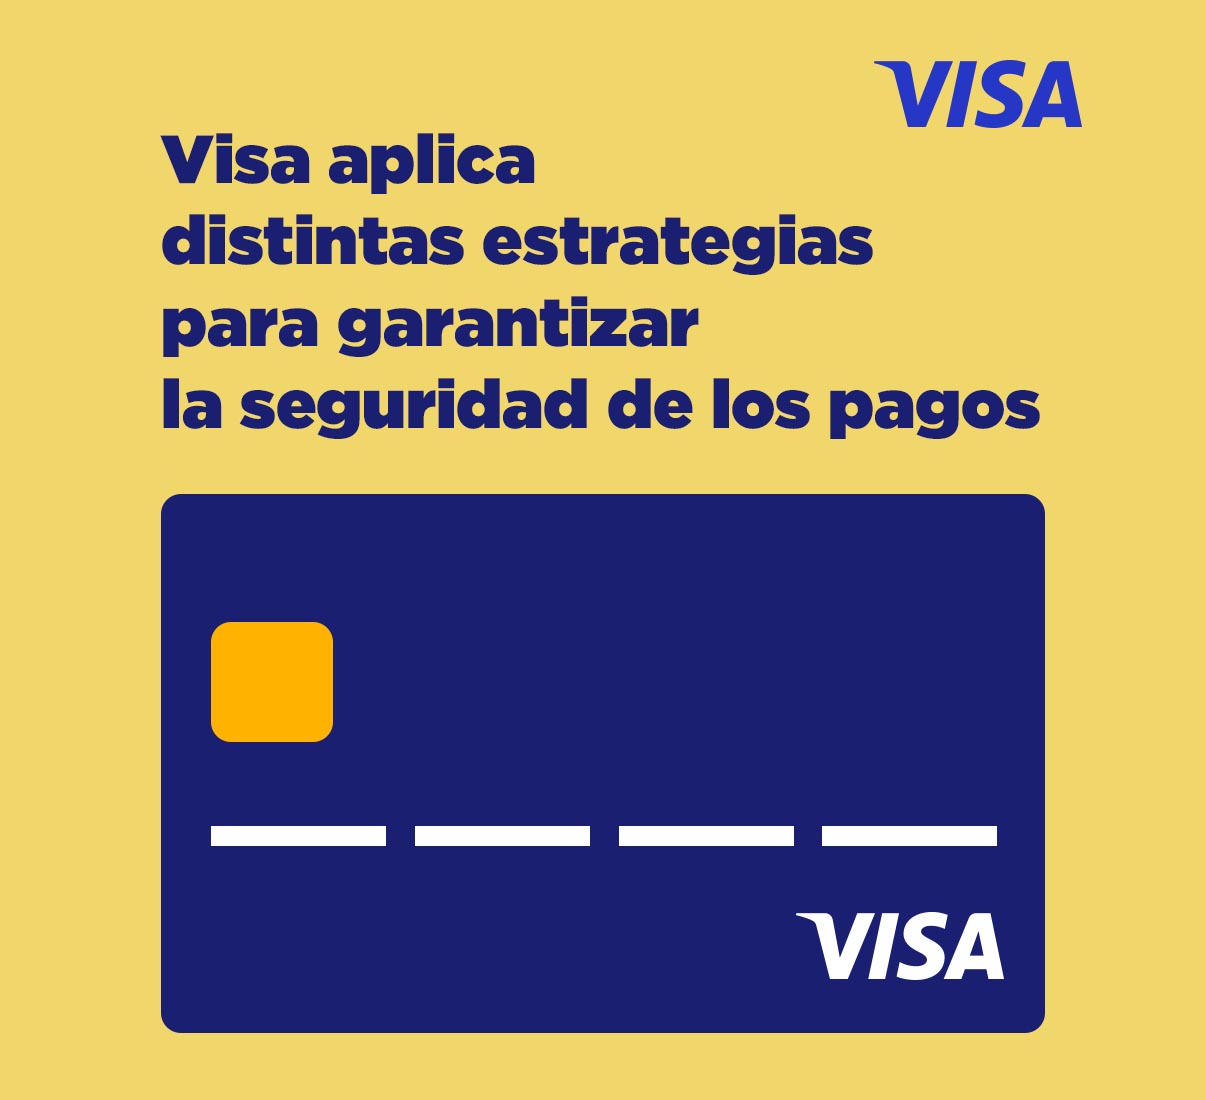 Visa emplea diferentes estrategias para garantizar la seguridad